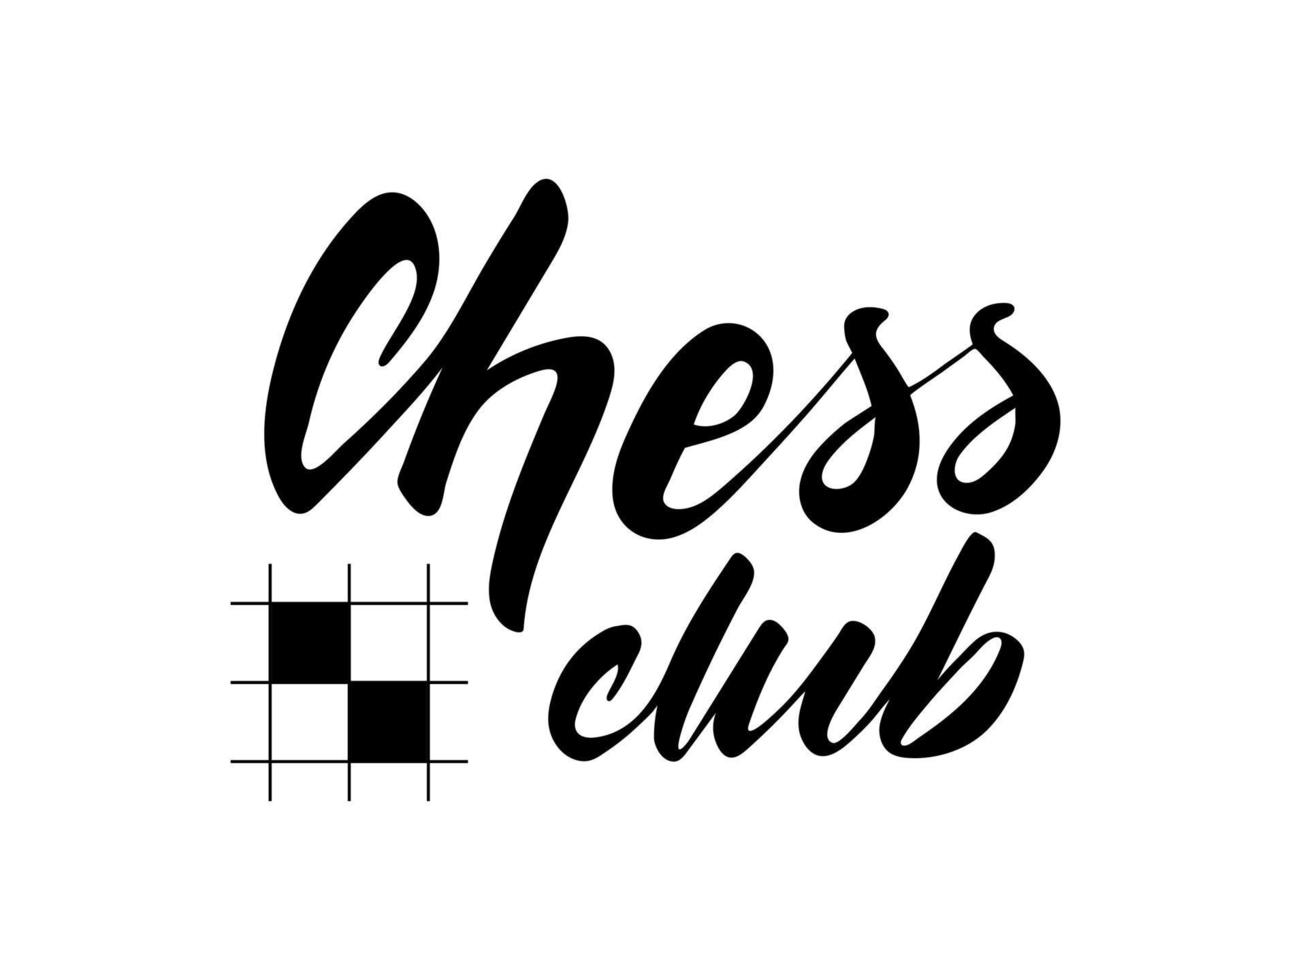 Schachclub - Schwarzweiss-Schriftzug beschriftet auf weißem Hintergrund. Schachclub-Logo. Vektorillustration. vektor